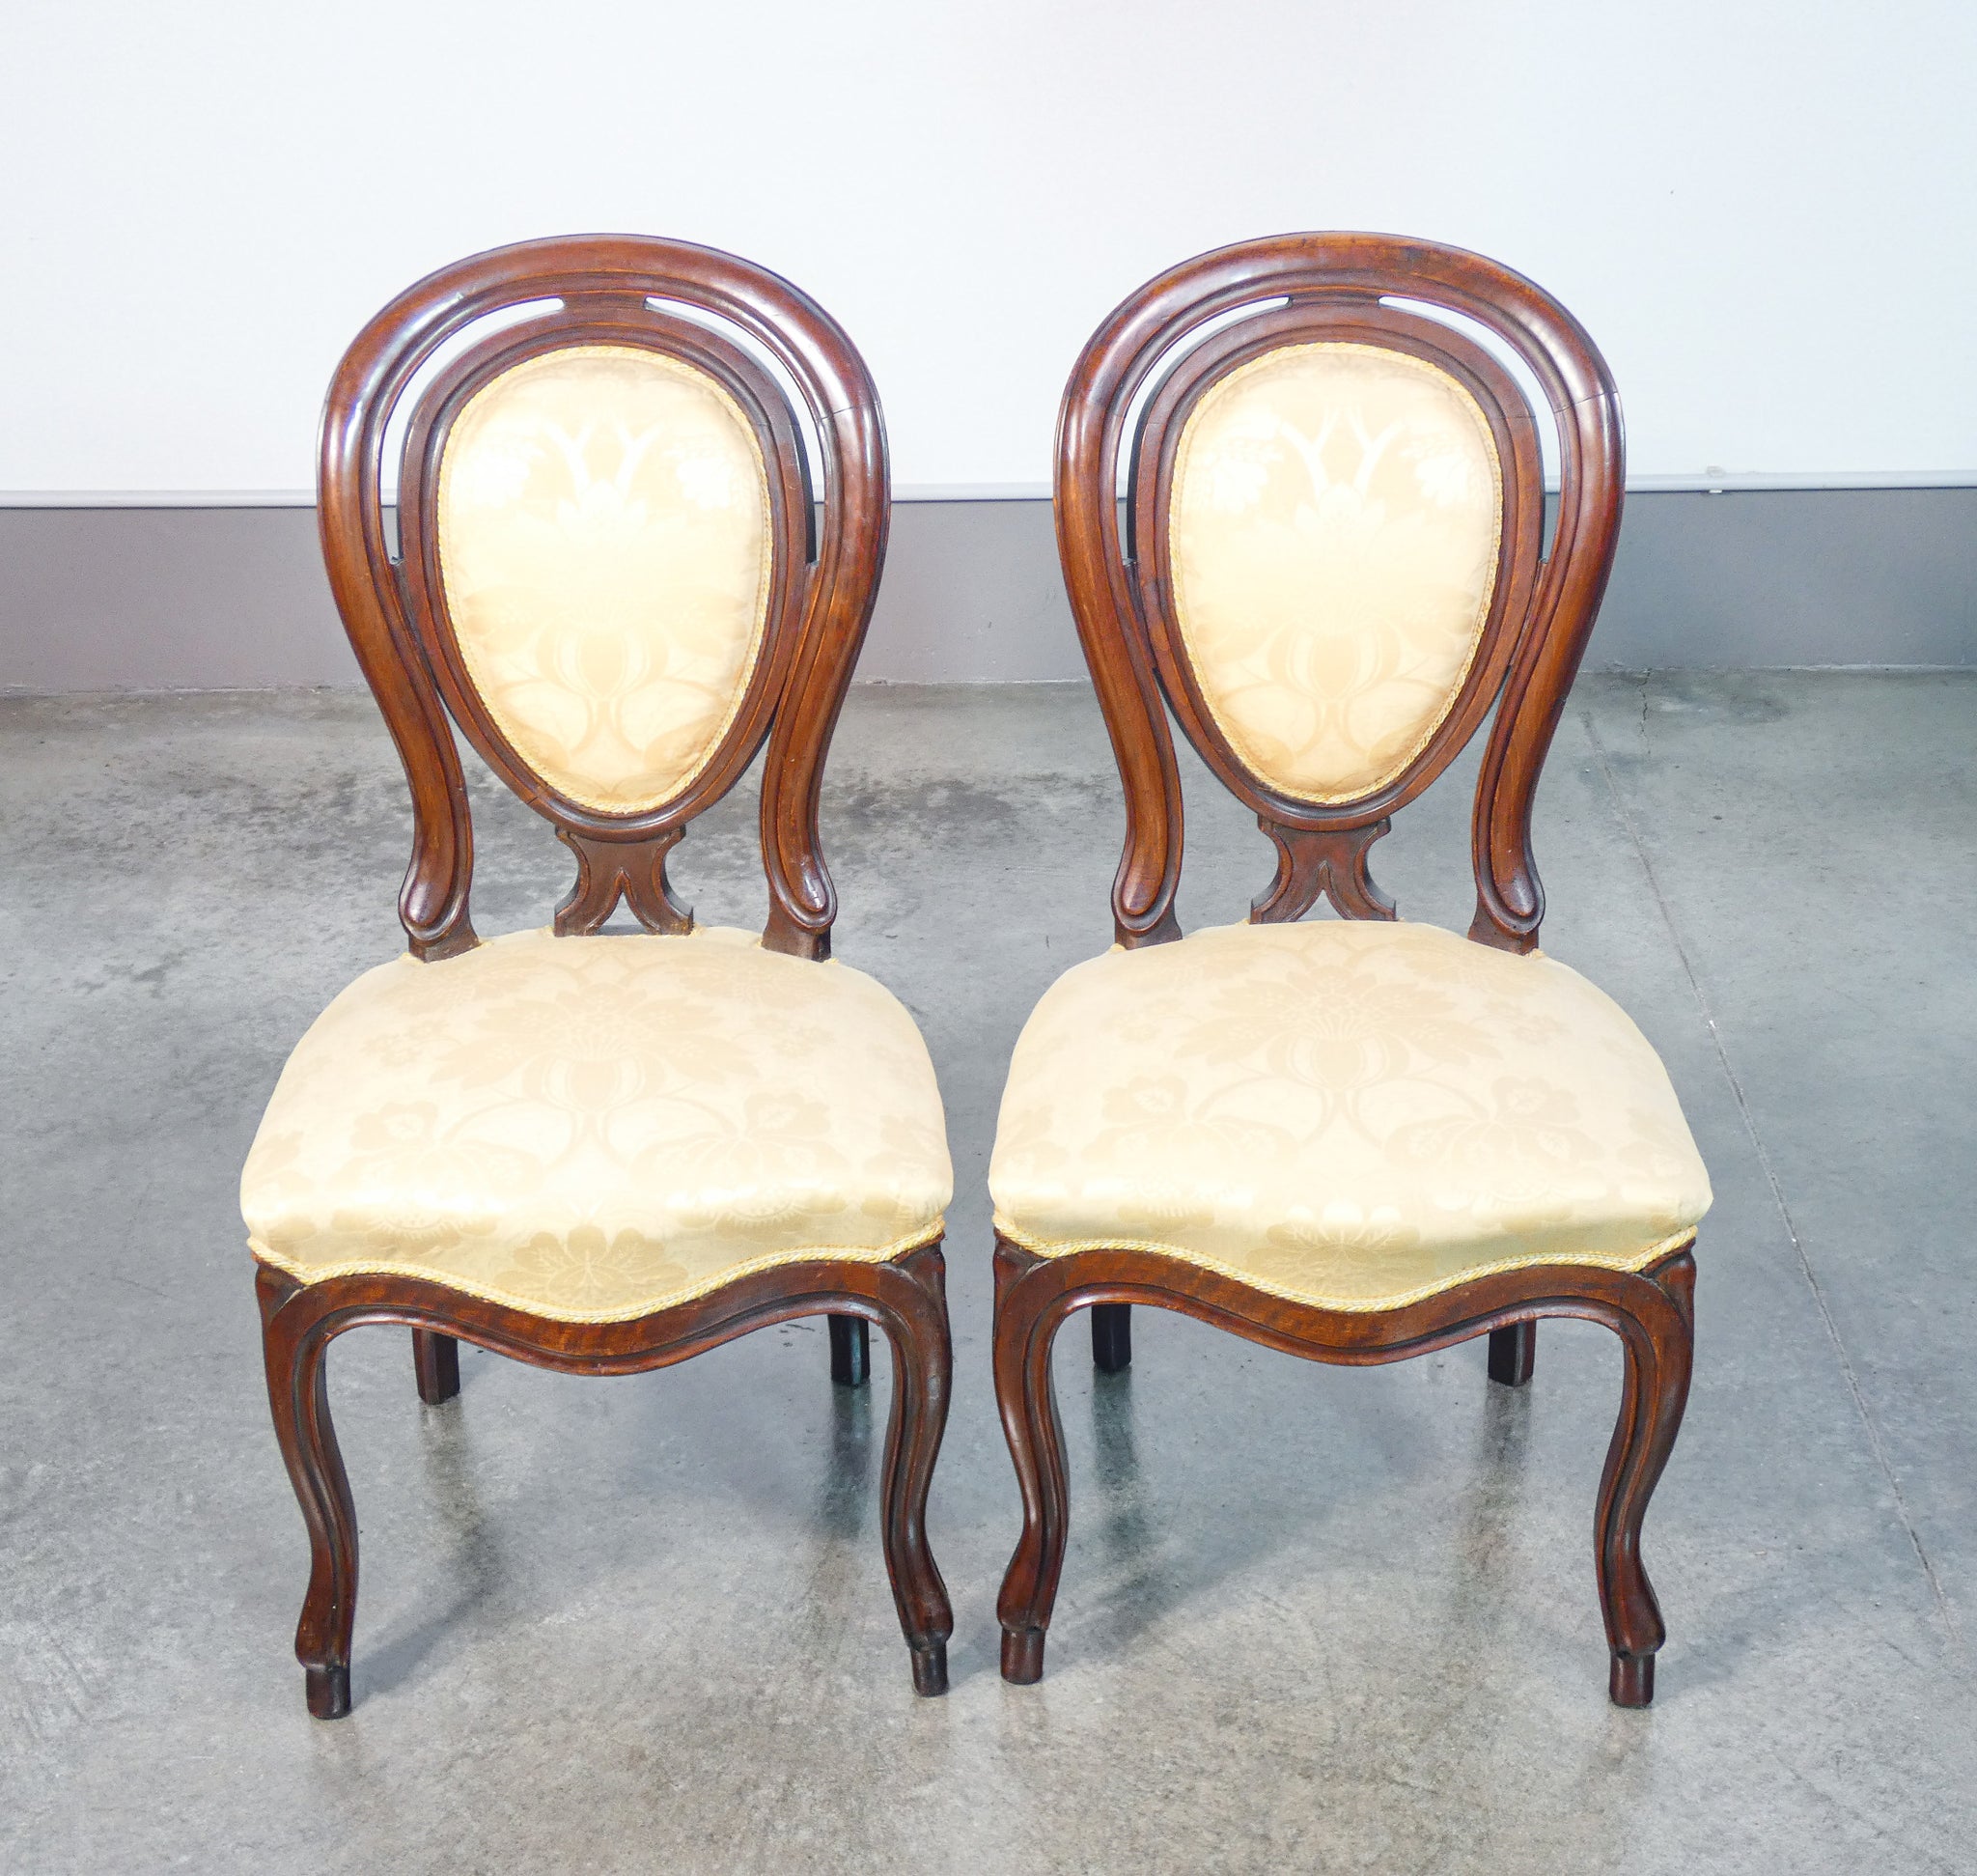 coppia sedie luigi filippo epoca 1800 legno noce massello scolpito poltrona